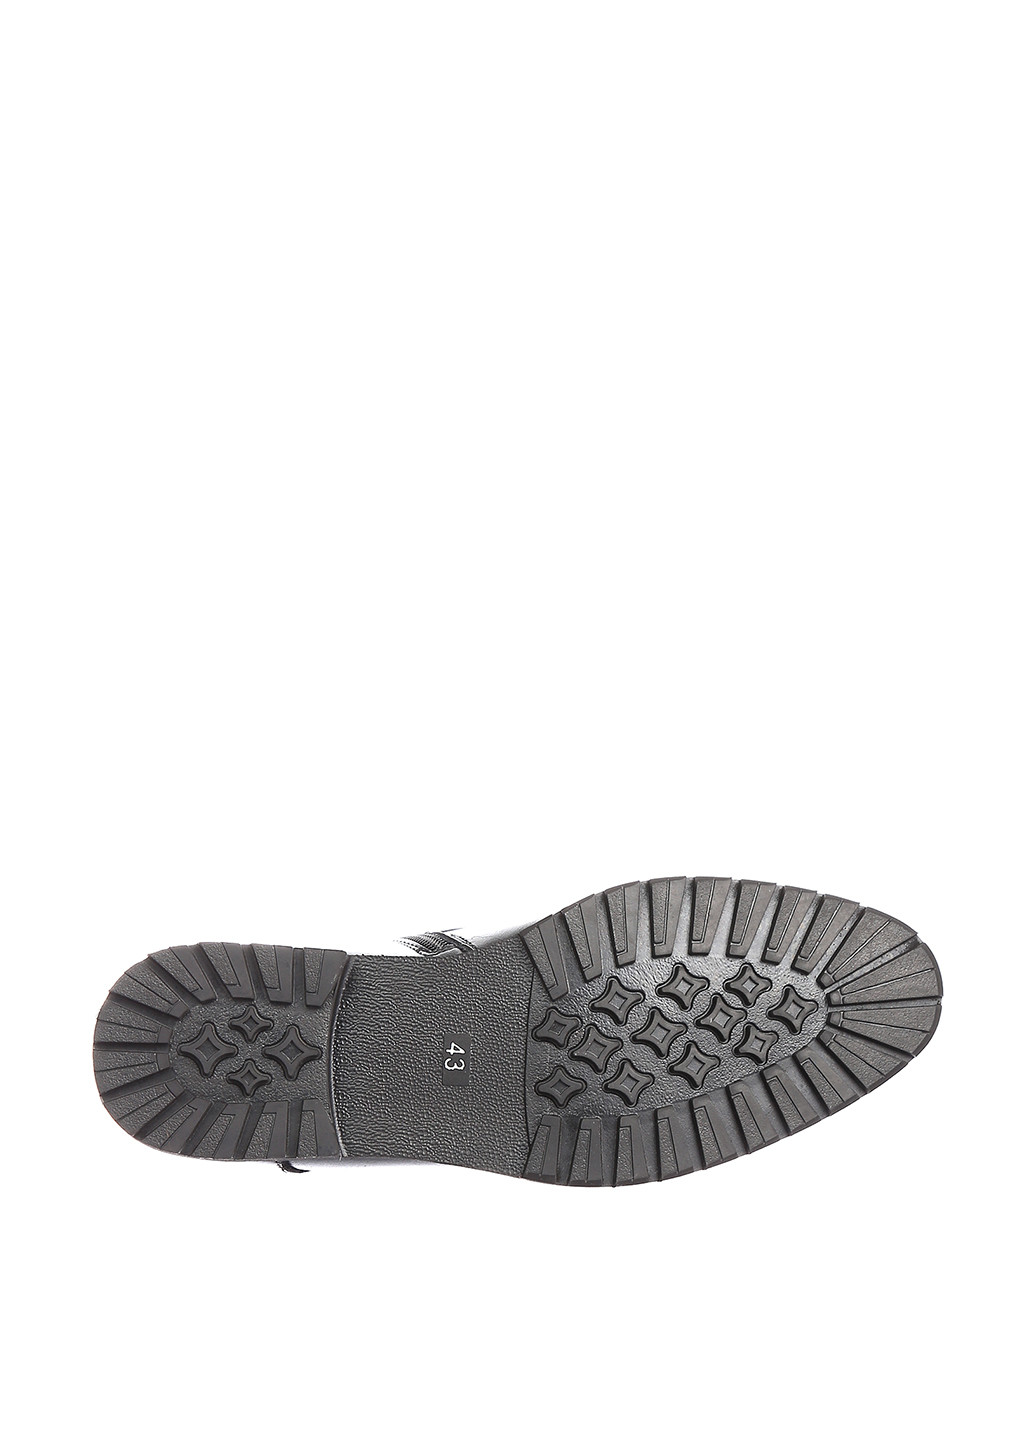 Черные осенние ботинки NEW STAR YALASOU